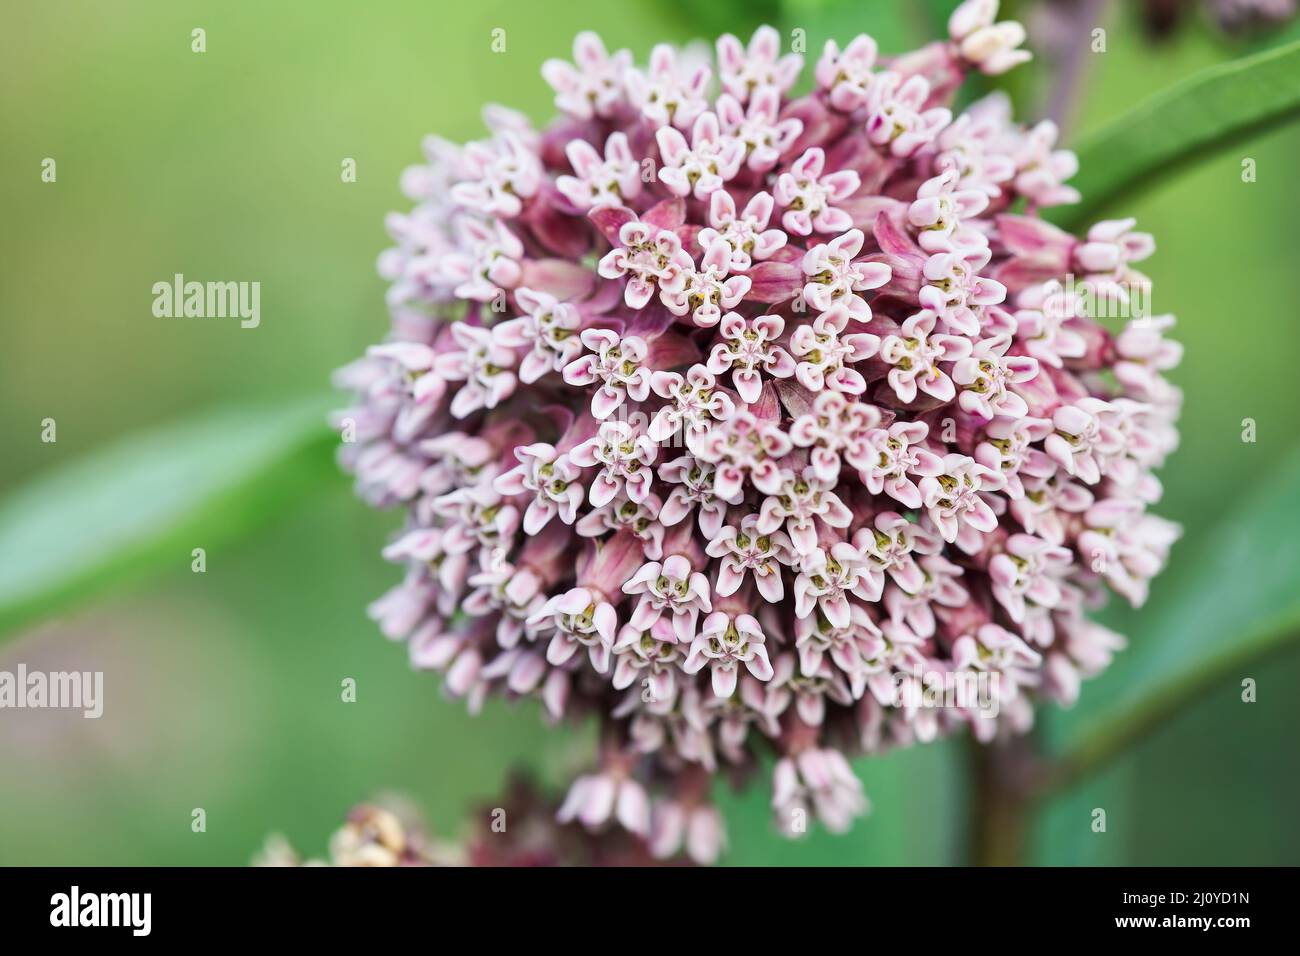 Resumen de la planta nativa Milkweed común, también conocido como hierba de maleza sedosa, flor de mariposa o hierba de Virginia. Una flor crítica para la supervivencia Foto de stock